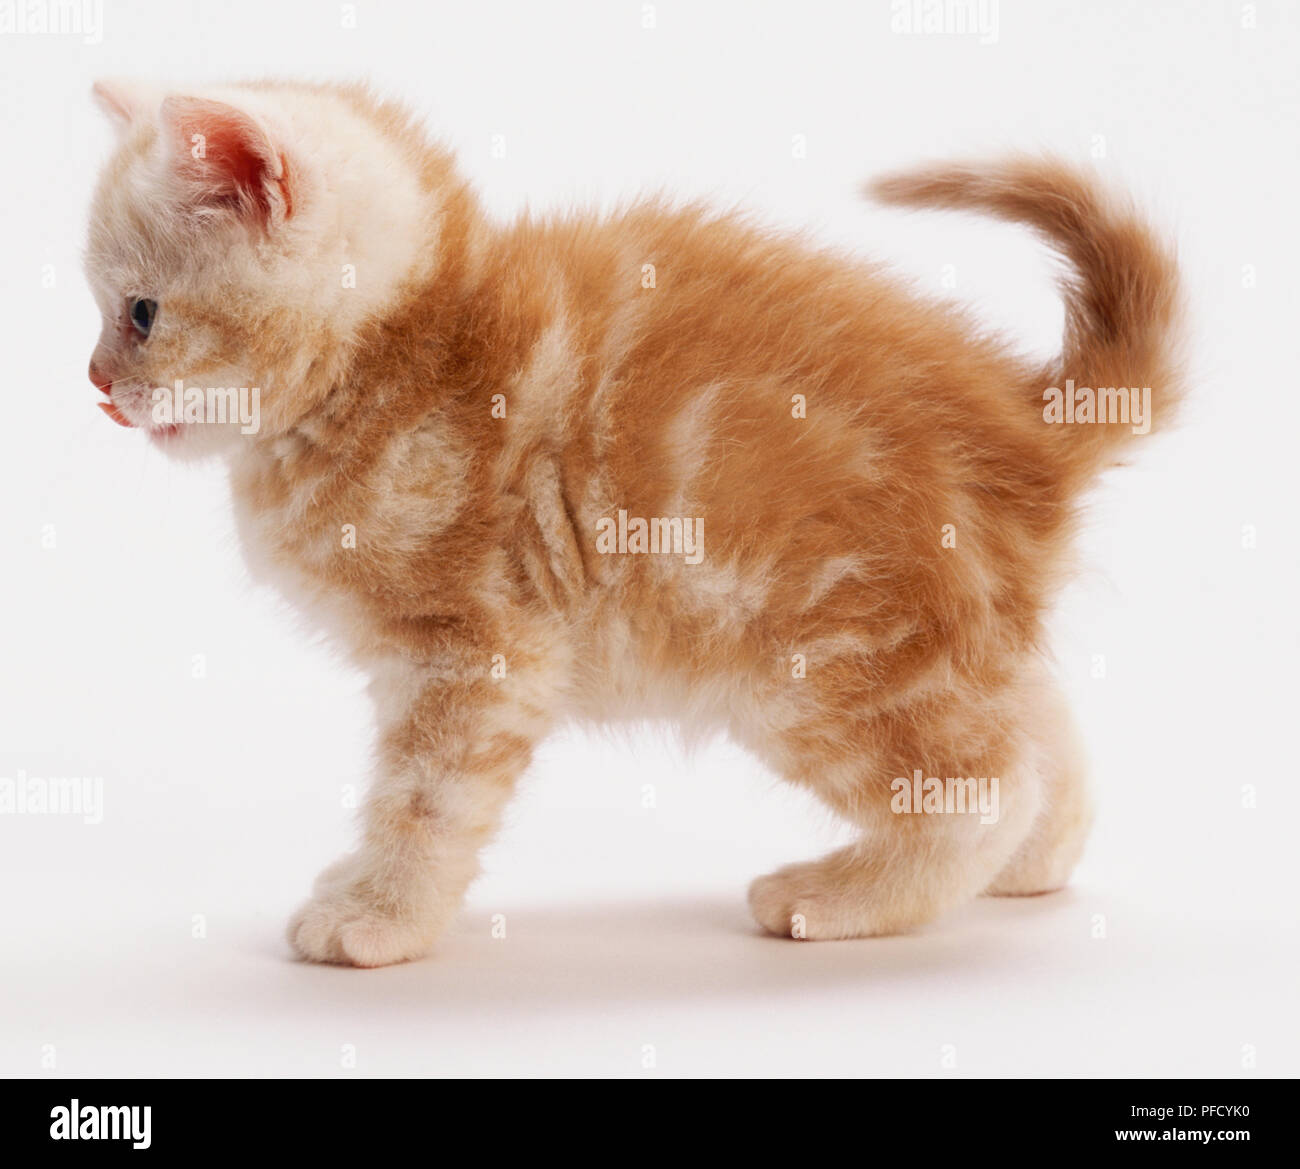 Ginger Kitten mit Tabbyzeichnung, dicke flauschige Fell, stehend, die Ohren nach vorne beugen, Lecken der Lippen, Schwanz dabei über zurück, Seitenansicht. Stockfoto